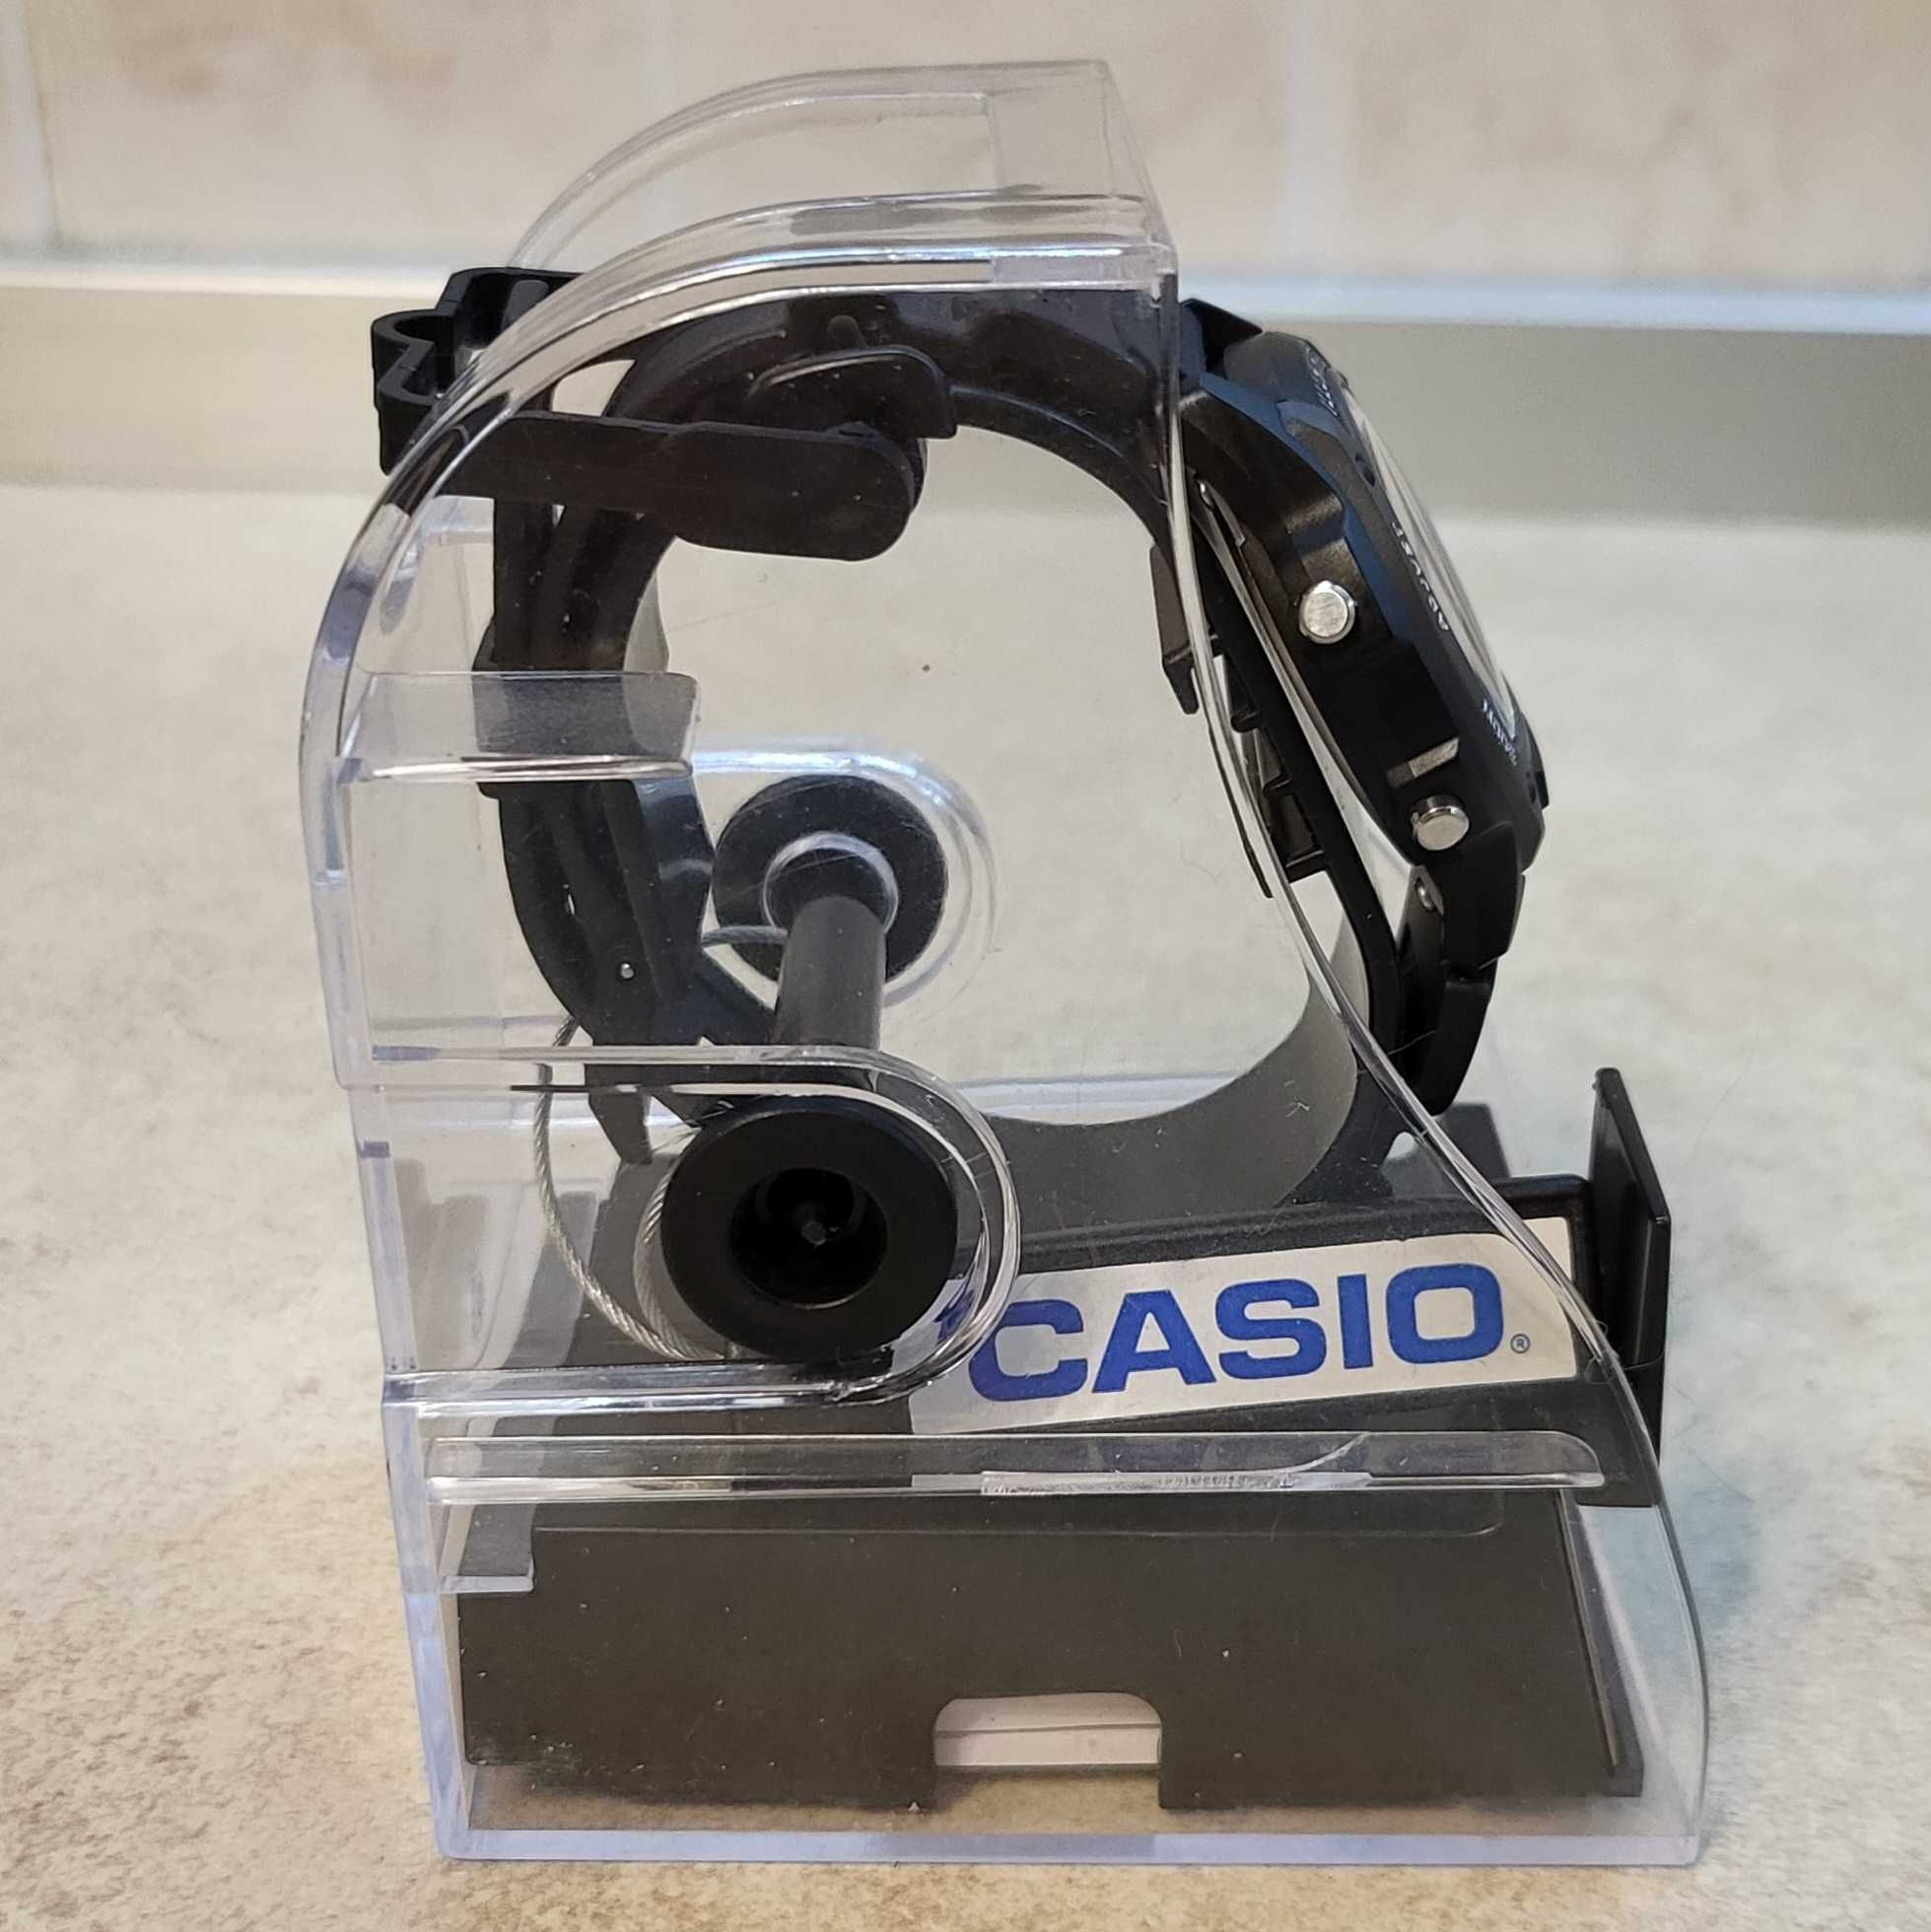 Часы Casio W93H-1AV с автоподсветкой. Редкая модель, оригинал, новые!